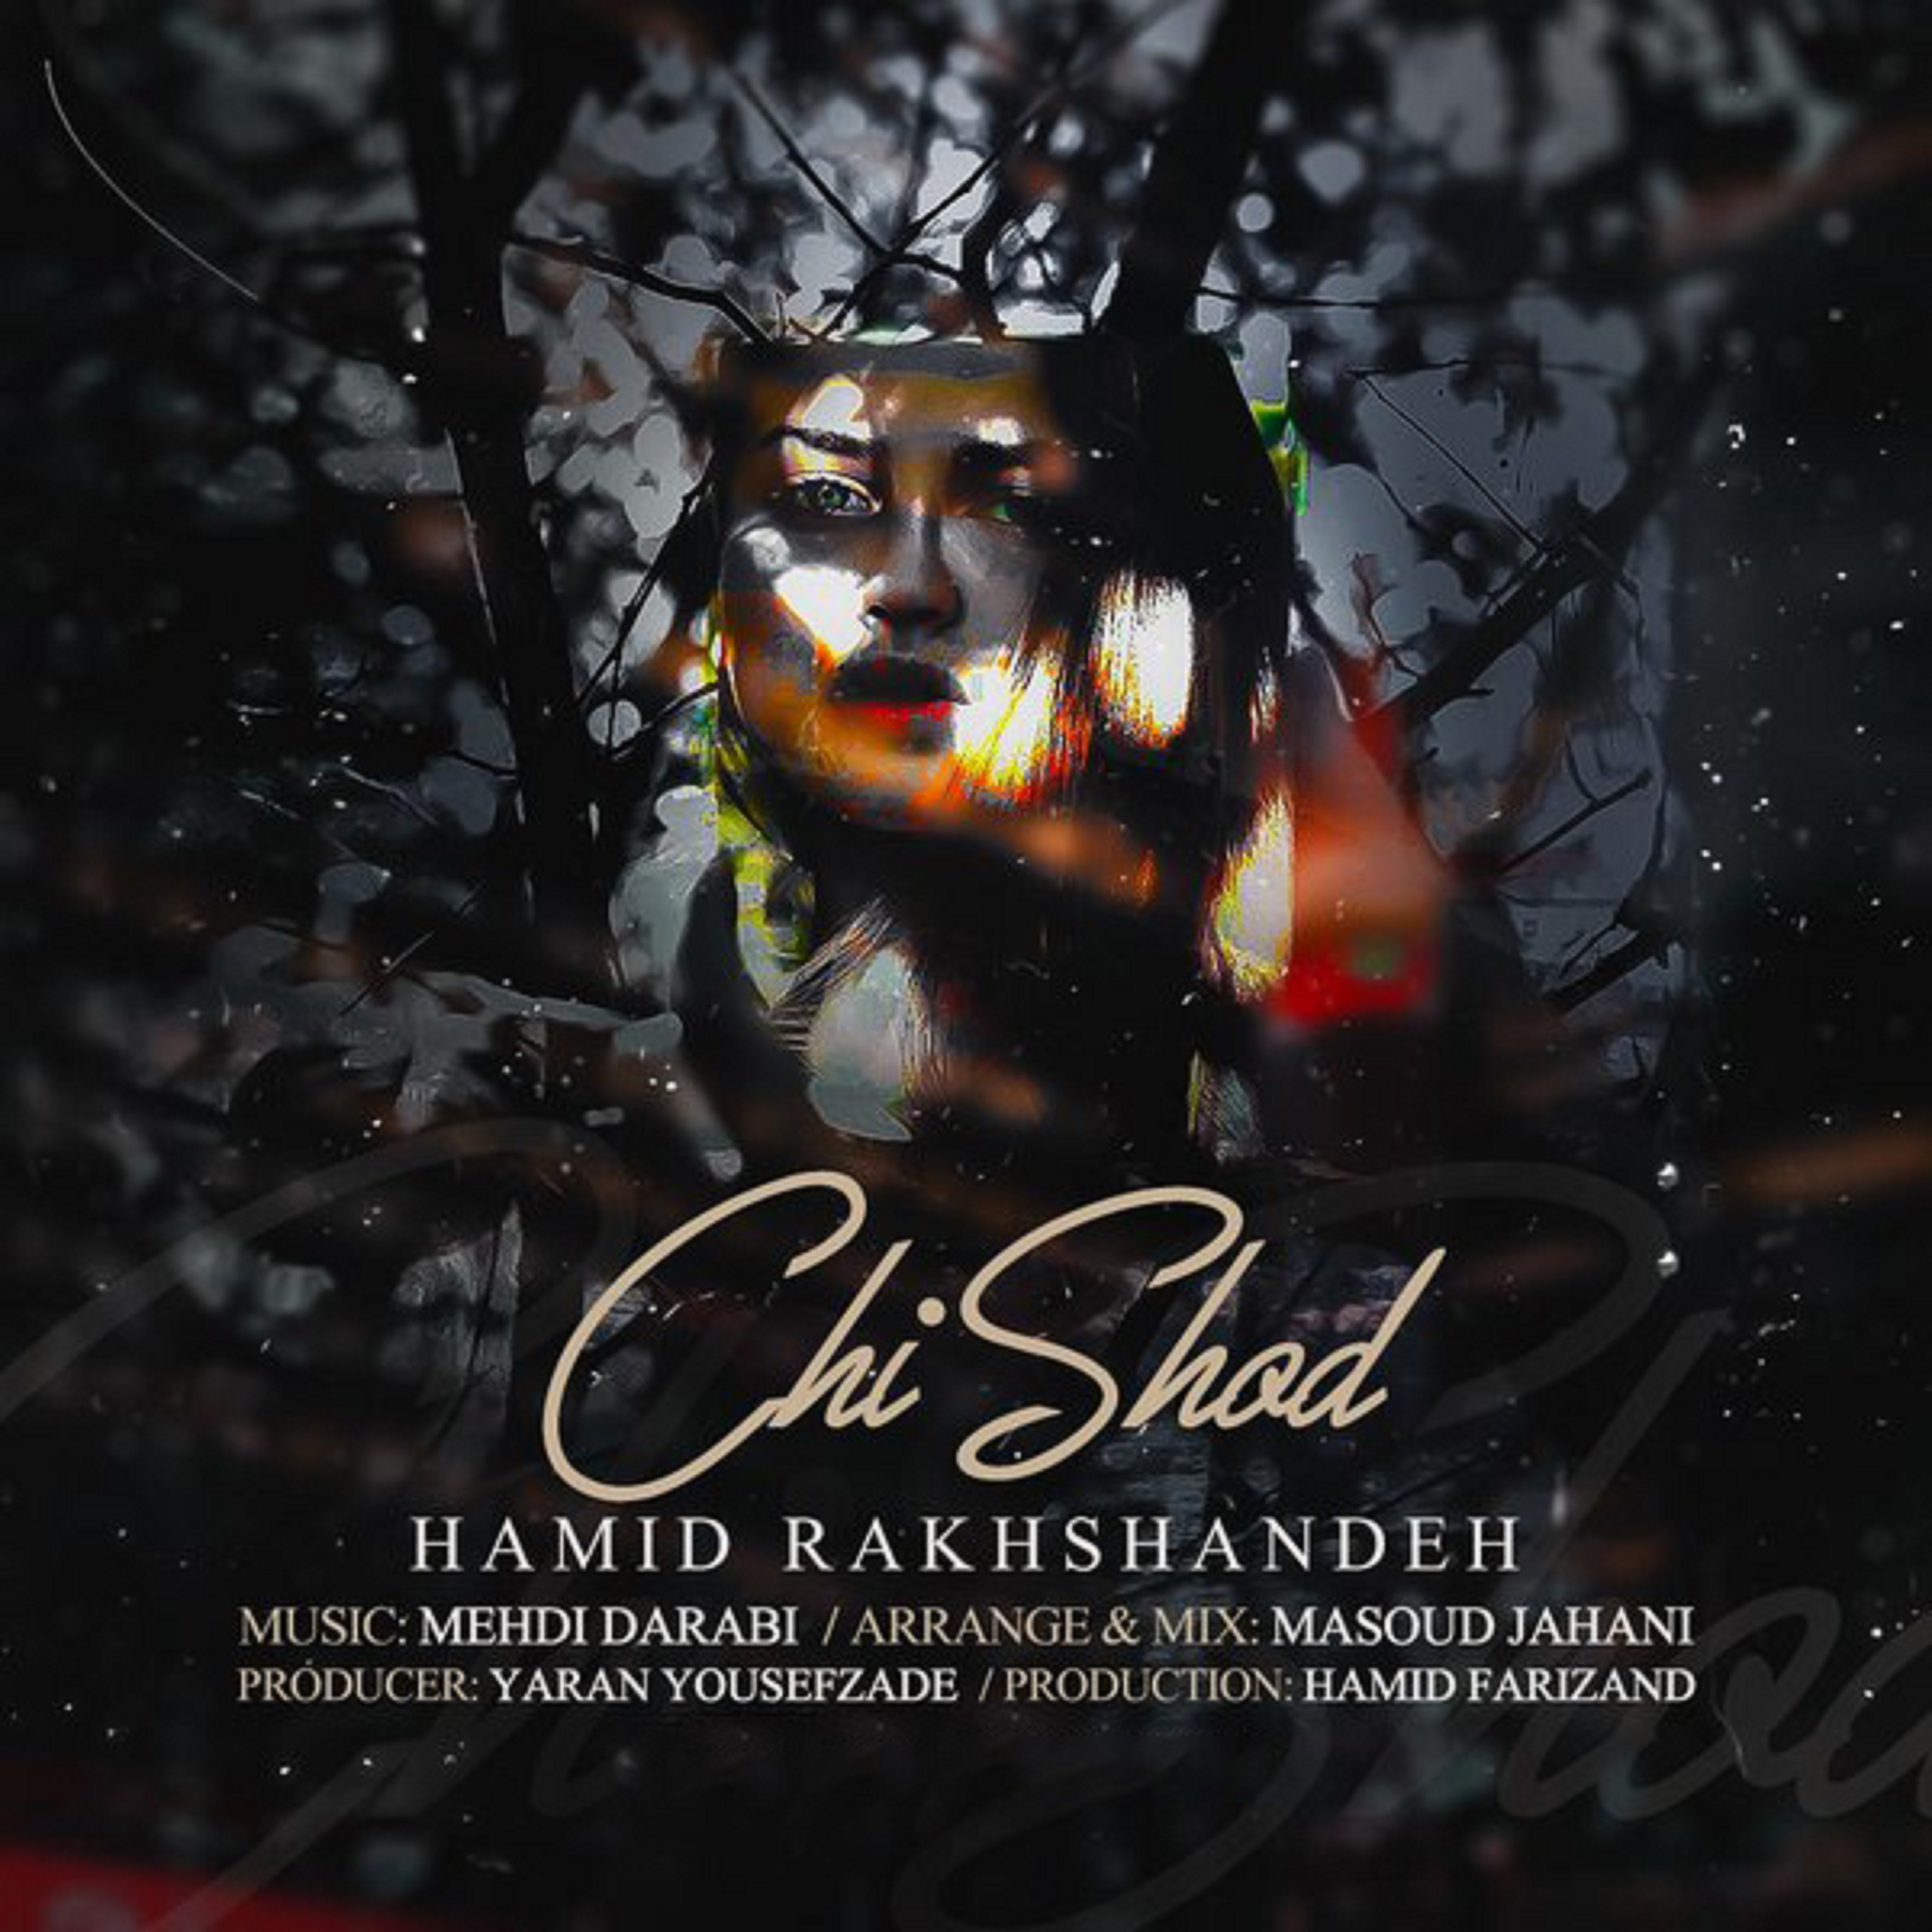  دانلود آهنگ جدید حمید رخشنده - چی شد | Download New Music By Hamid Rakhshandeh  - Chi Shod